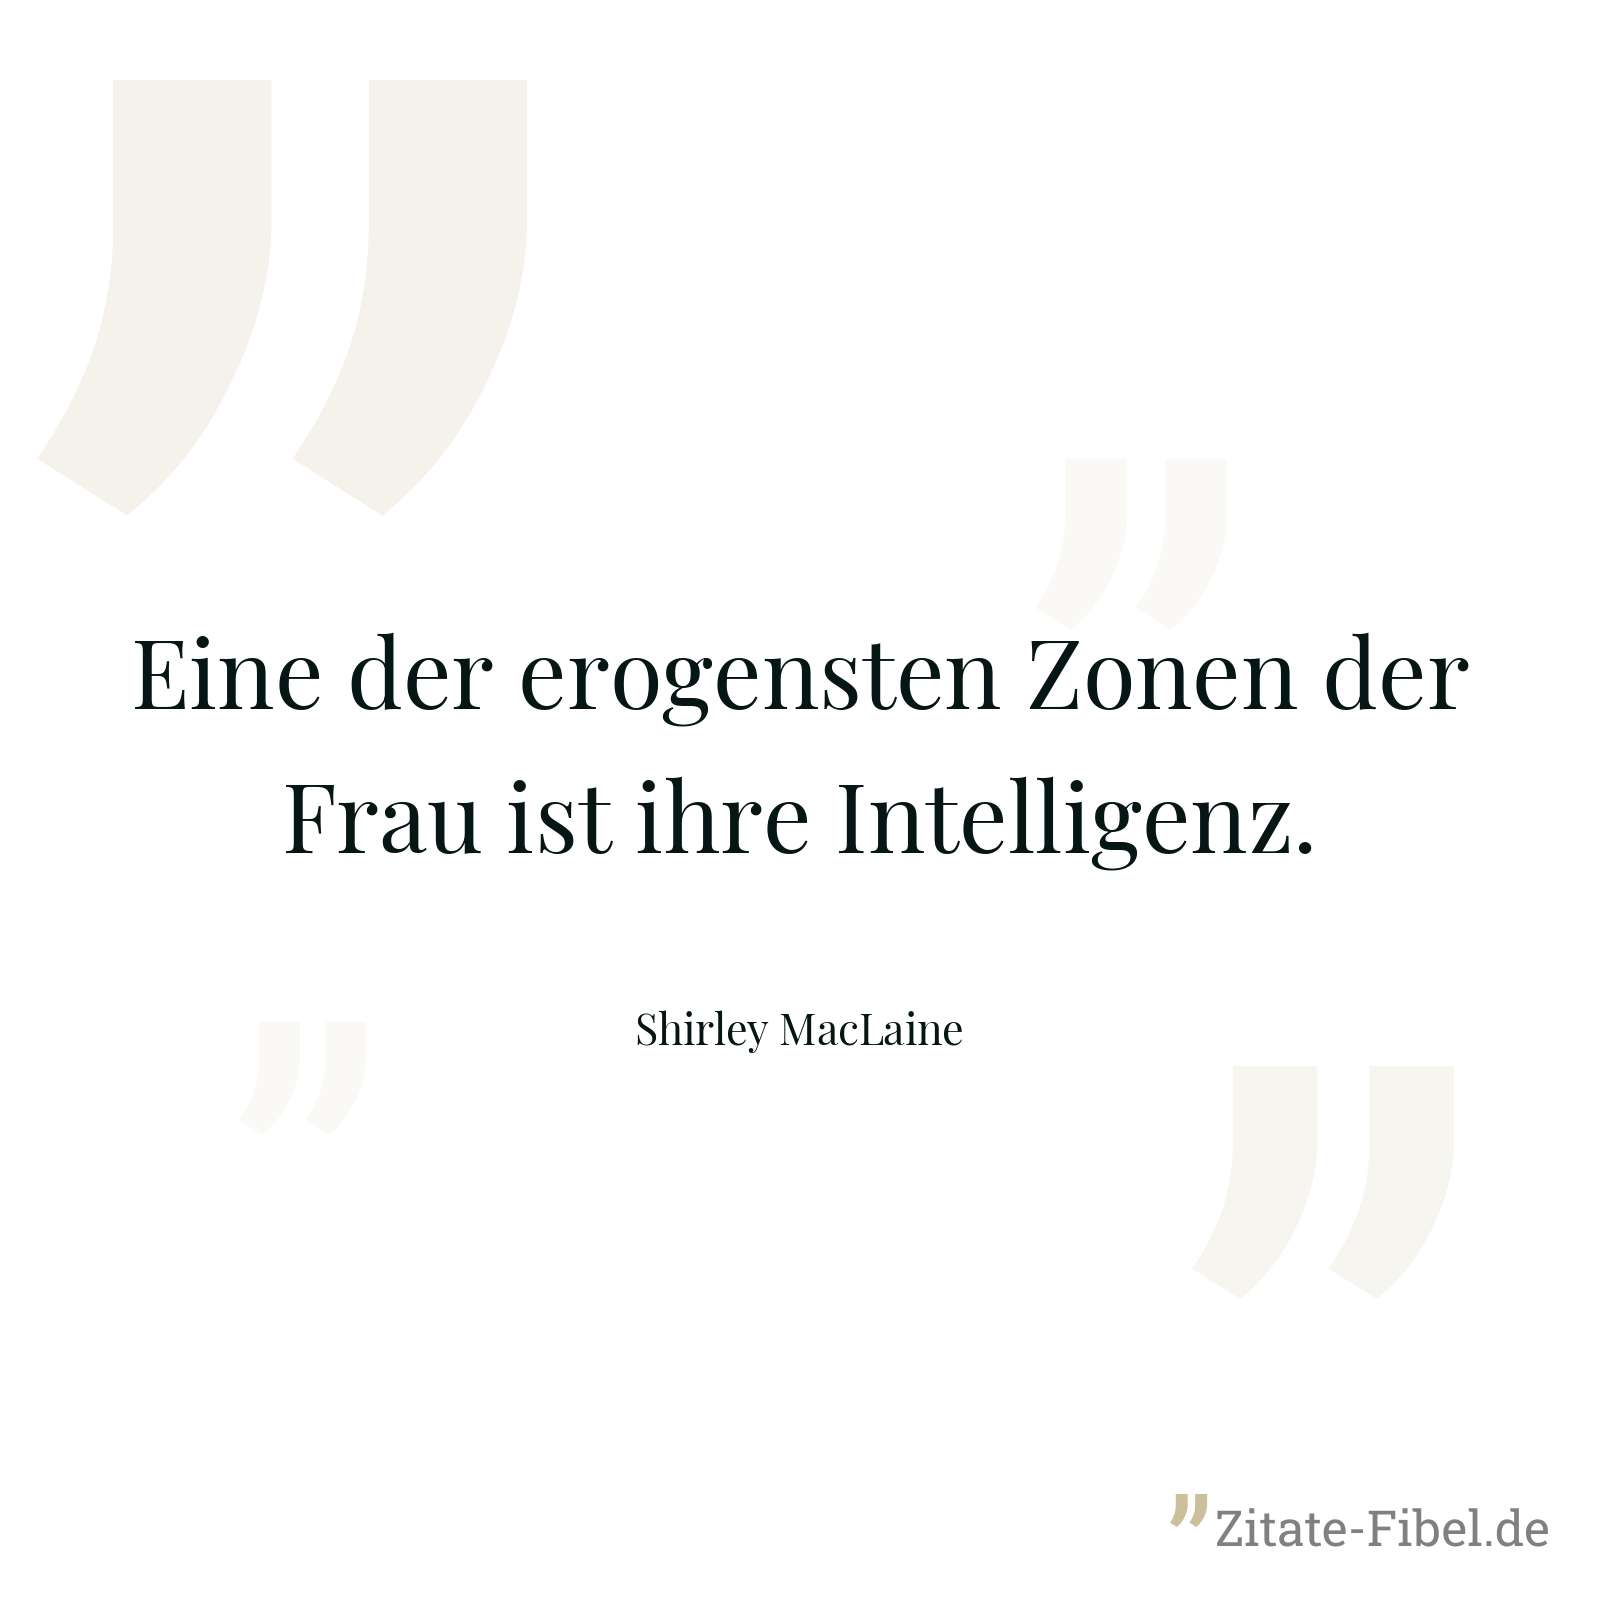 Eine der erogensten Zonen der Frau ist ihre Intelligenz. - Shirley MacLaine